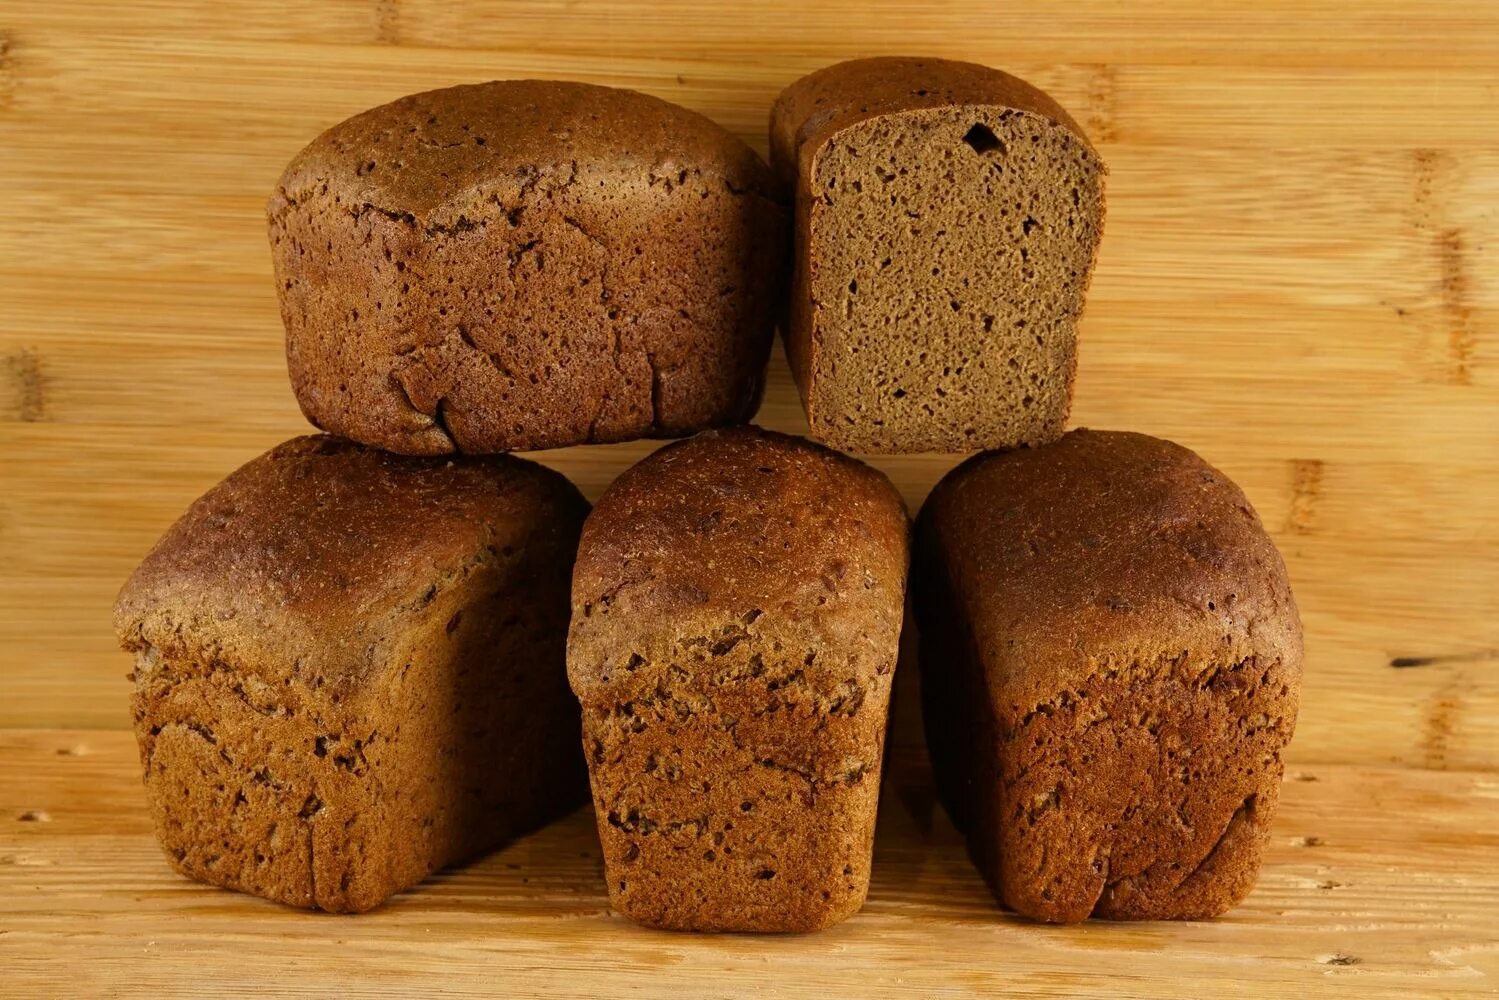 Ржано-пшеничный хлеб. Ржано-пшеничный хлеб Буханка. Хлеб ржано-пшеничный формовой. Хлеб ржано пшеничный круглый. Название ржаного хлеба